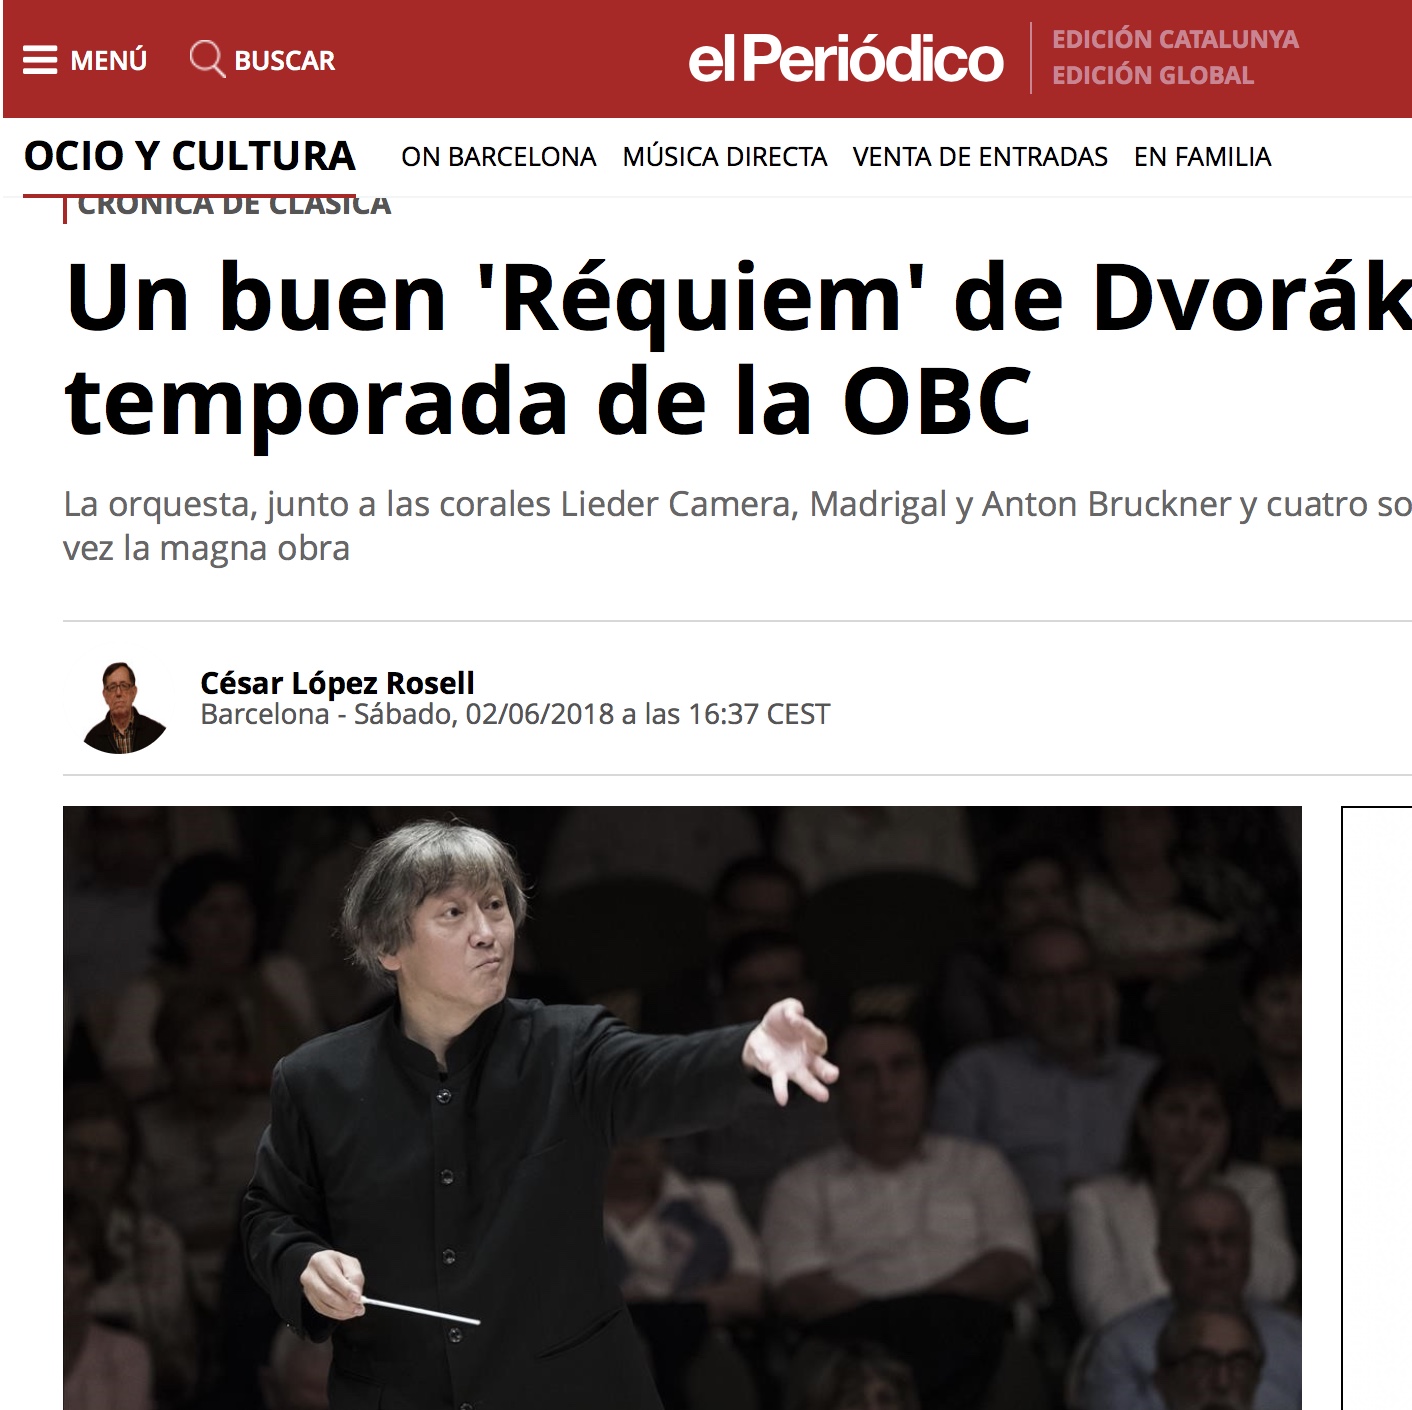 El Periodico; Dvórak; Temporada OBC; L'Auditori